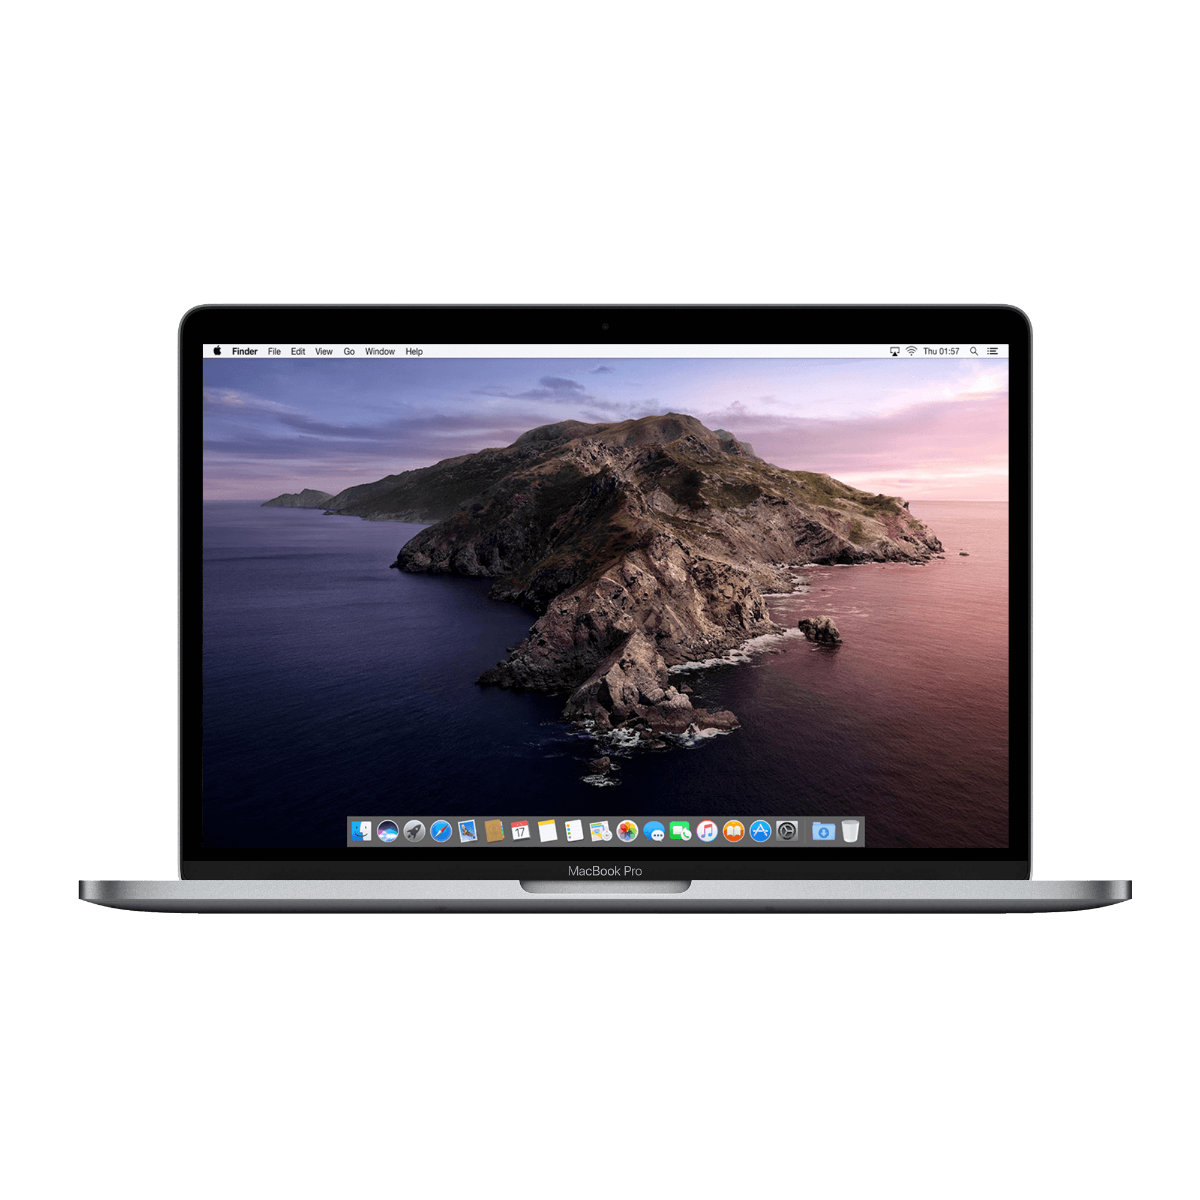 Refurbished MacBook Pro Touchbar 13" i5 2.4 Ghz 16GB 256GB Spacegrijs - test-product-media-liquid1